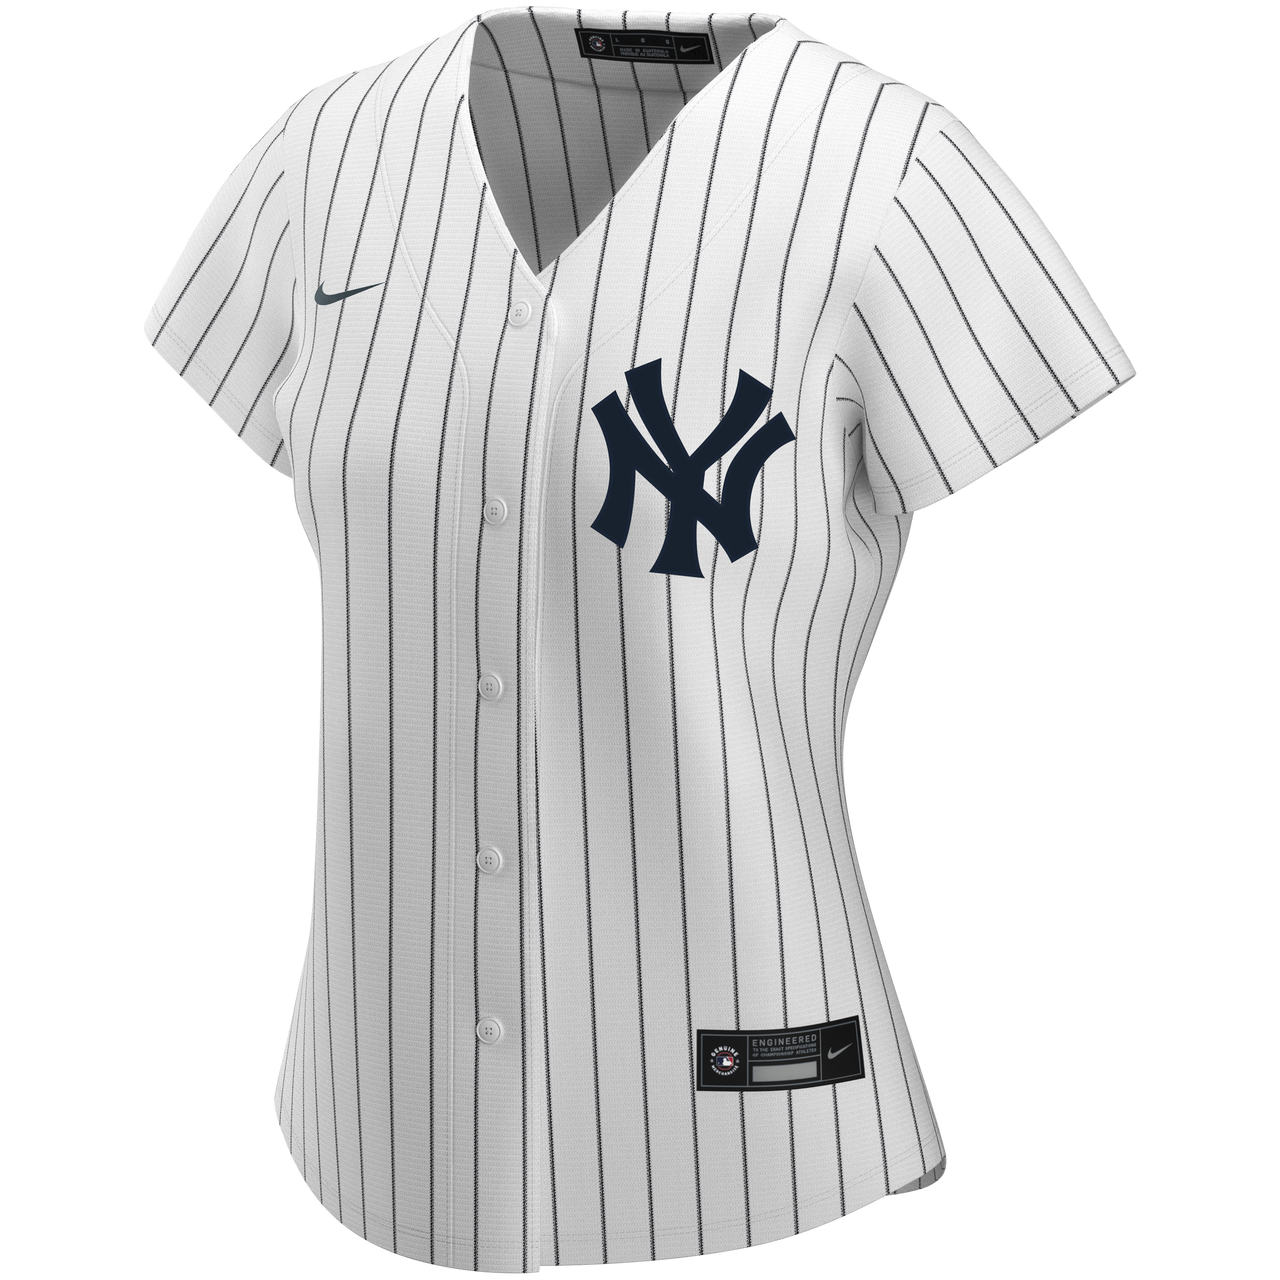 SALE!!! Women's New York Yankees Aaron Judge Majestic Home Jersey